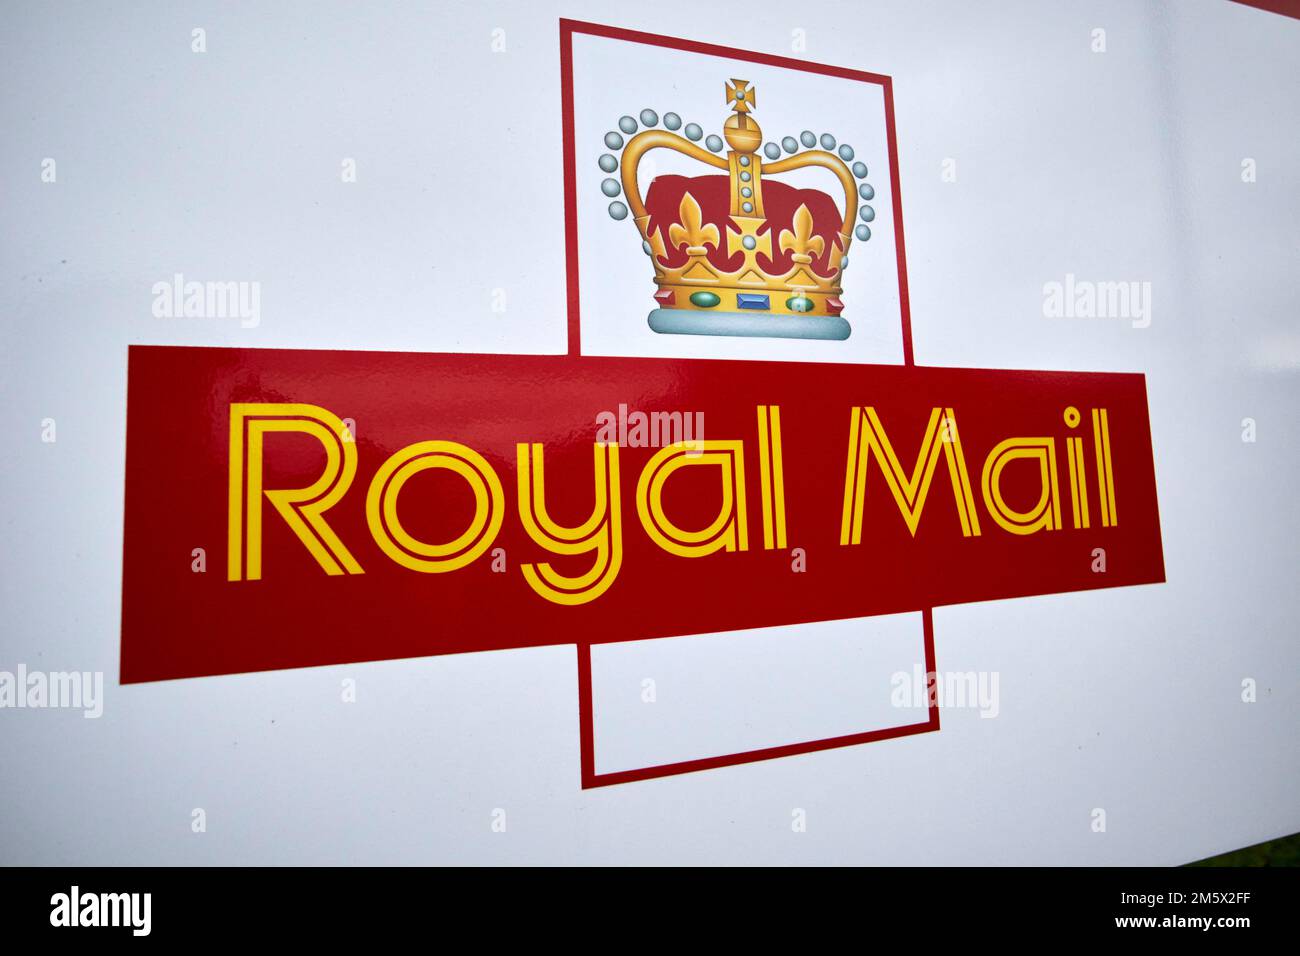 logo royal mail avec couronne newtownabbabbabbabbabbabbabbabbabbabbab Banque D'Images